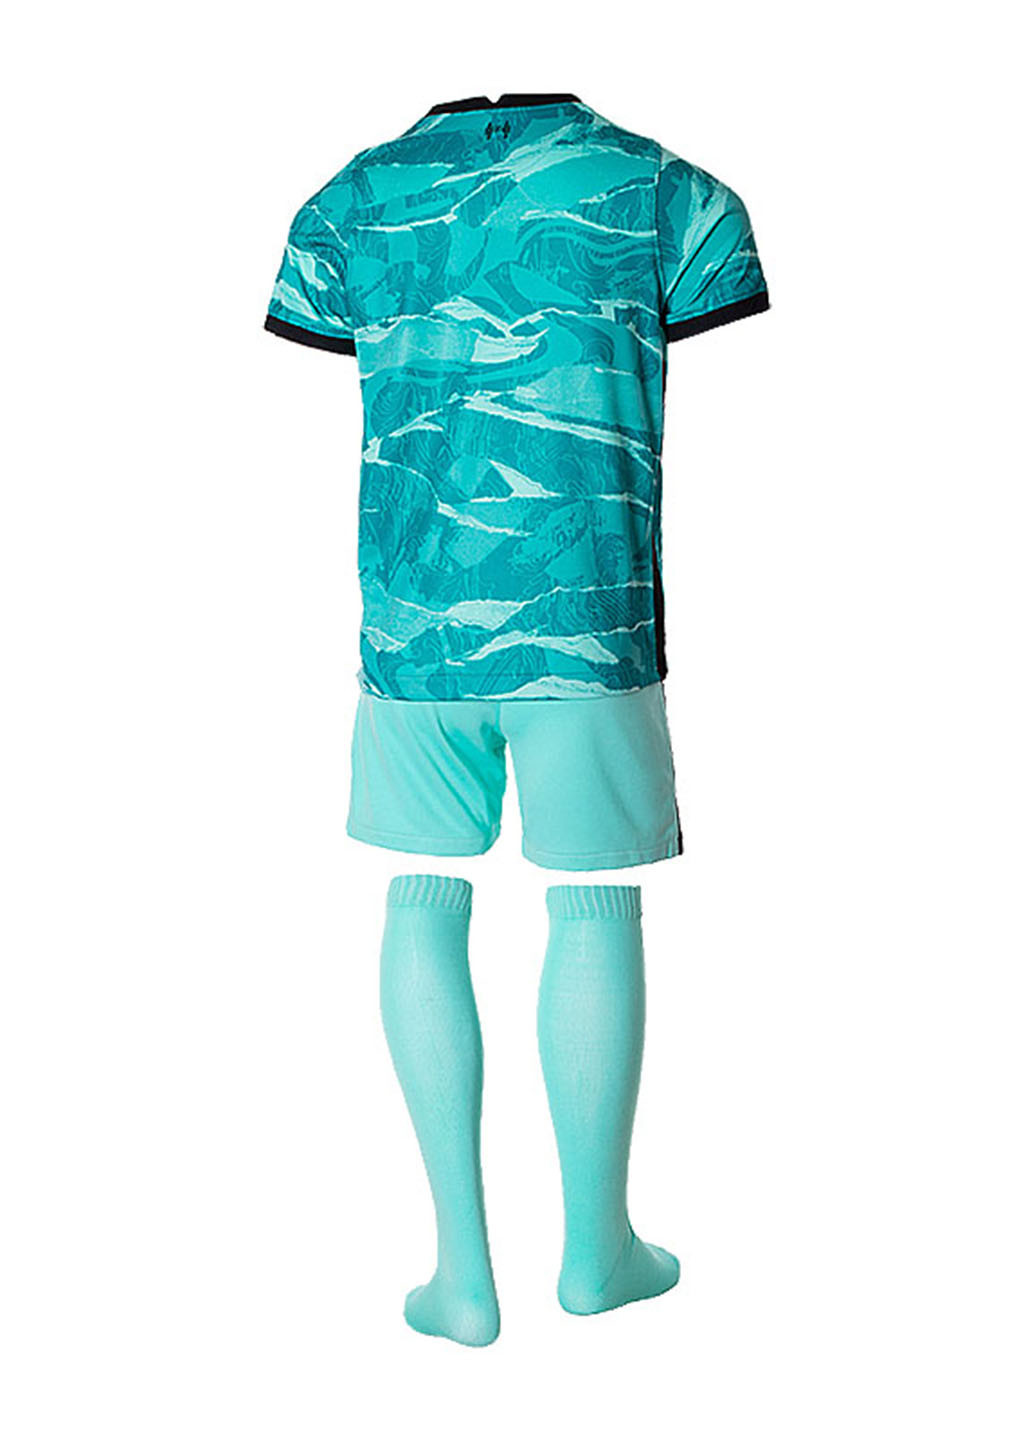 Бирюзовый демисезонный костюм (футболка, шорты, гольфы) Nike LFC I NK BRT KIT AW